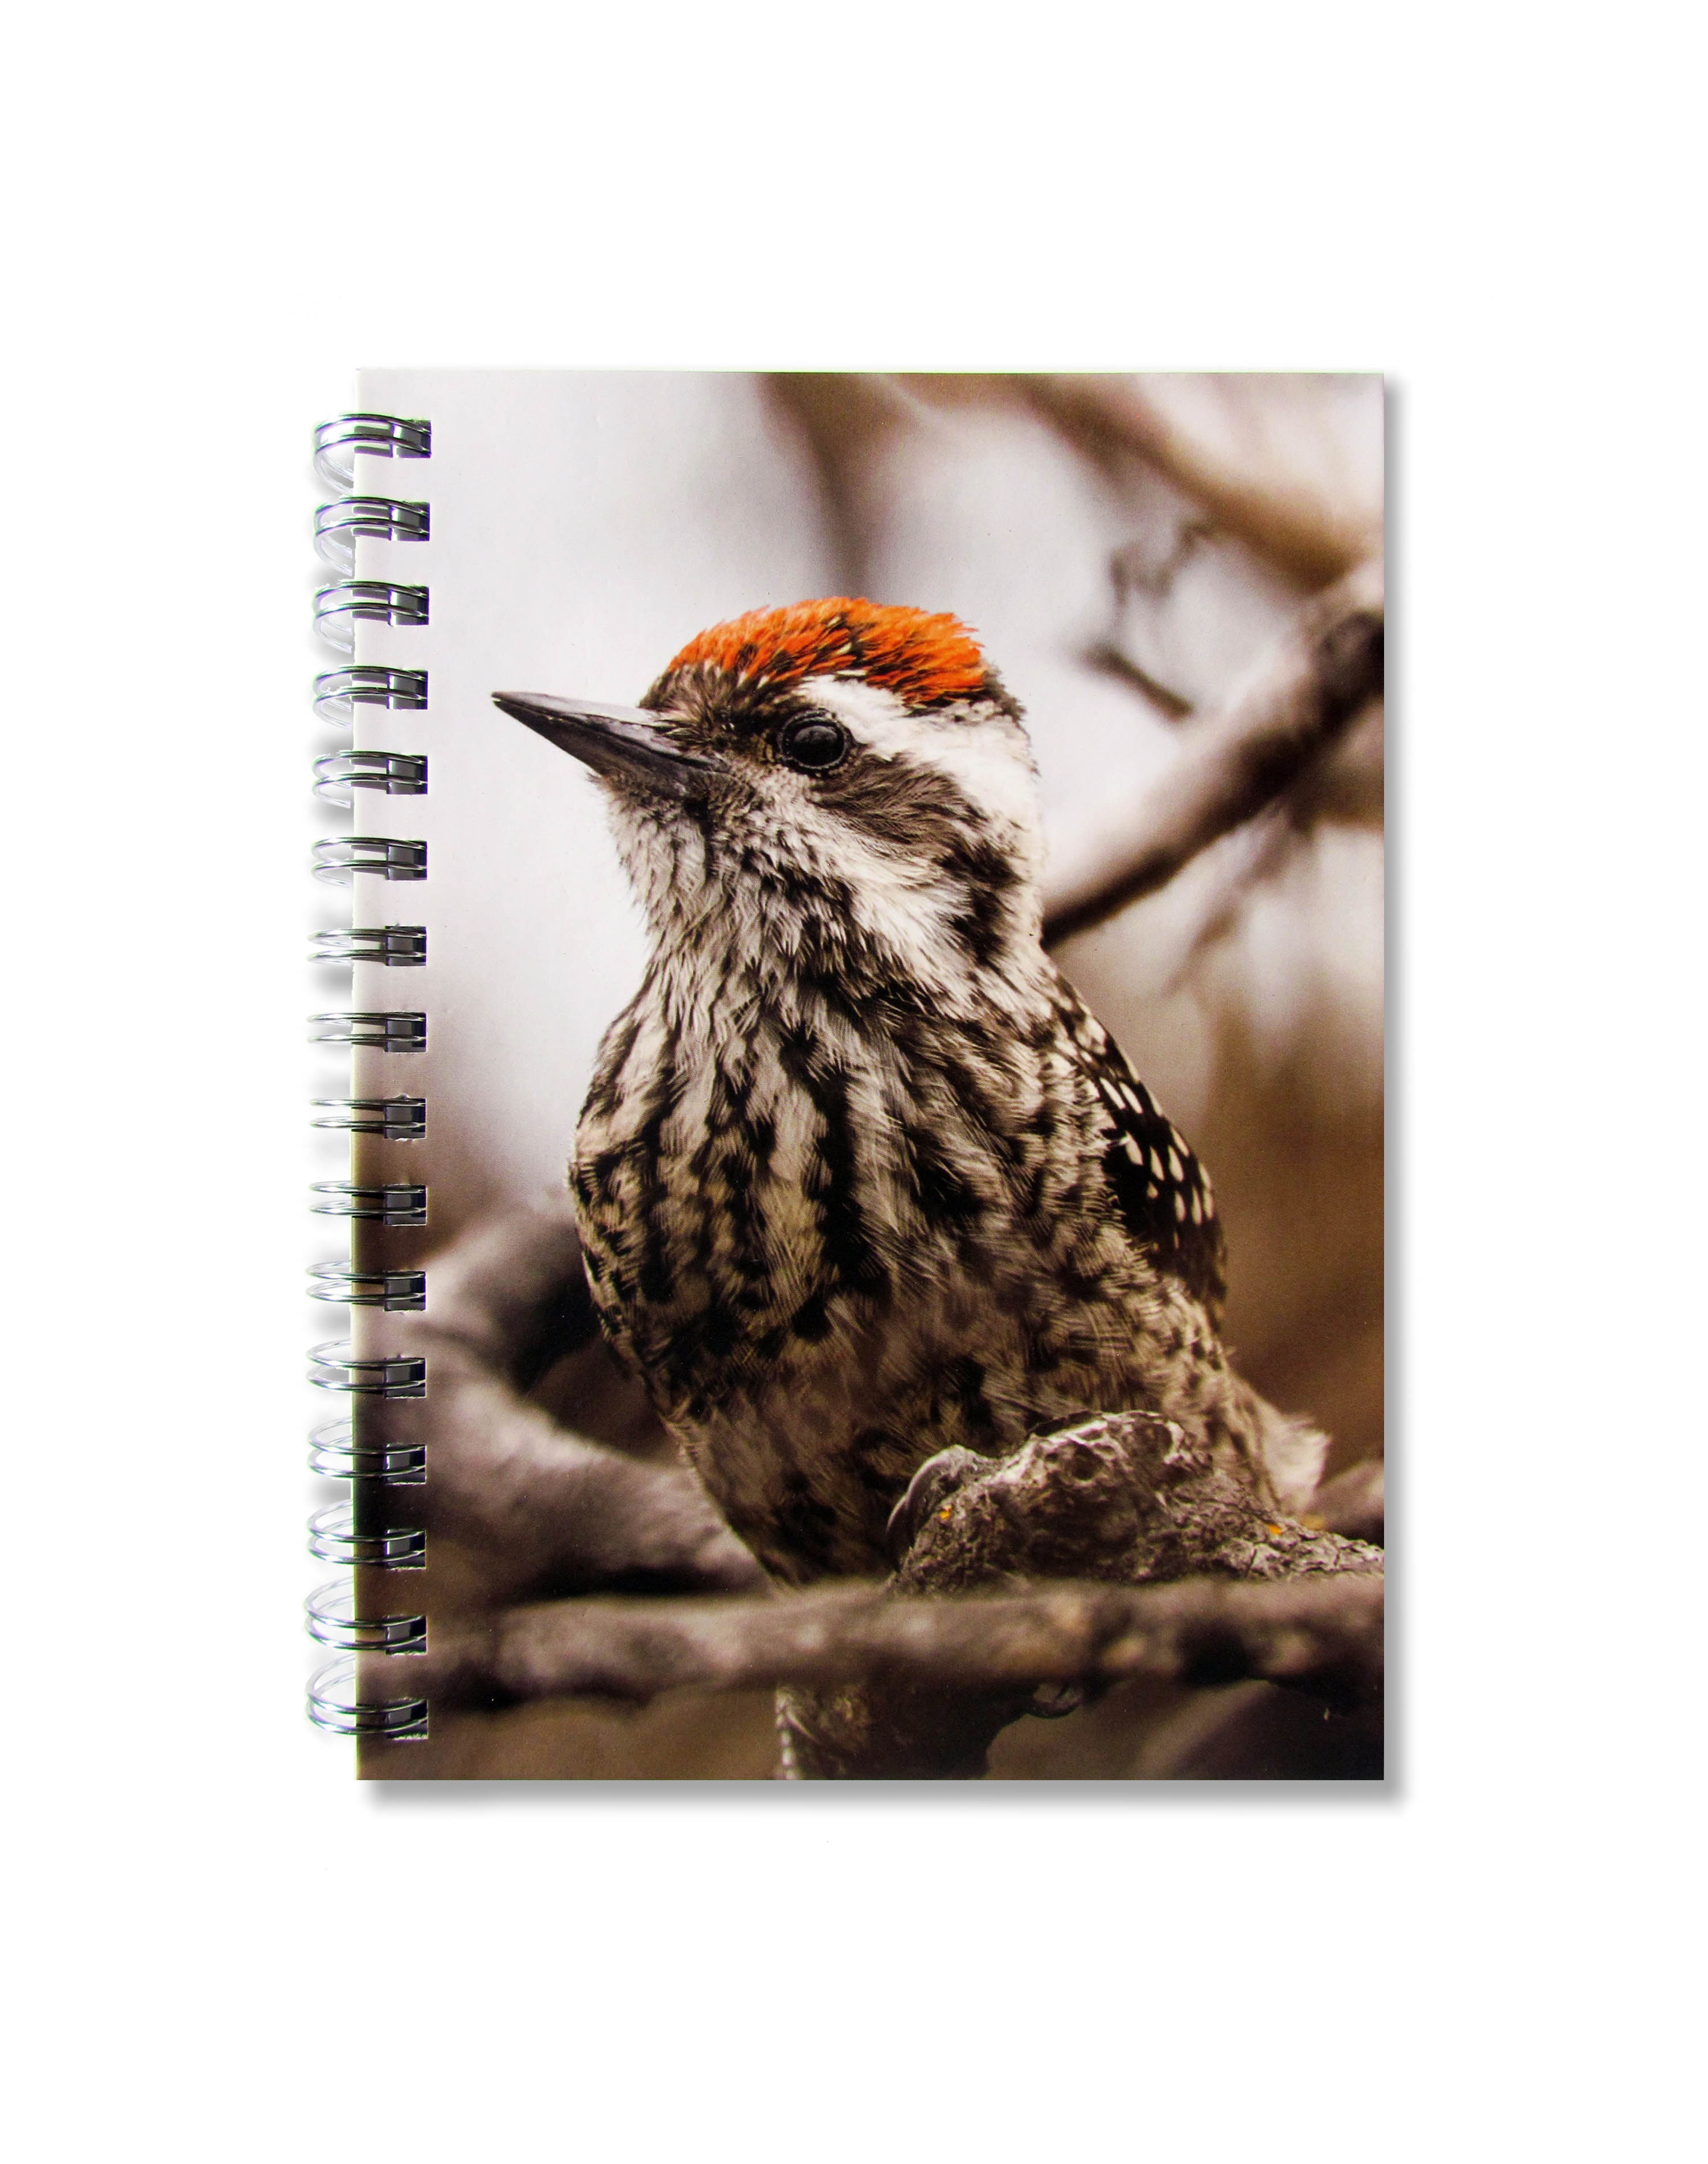 Cuaderno de Aves